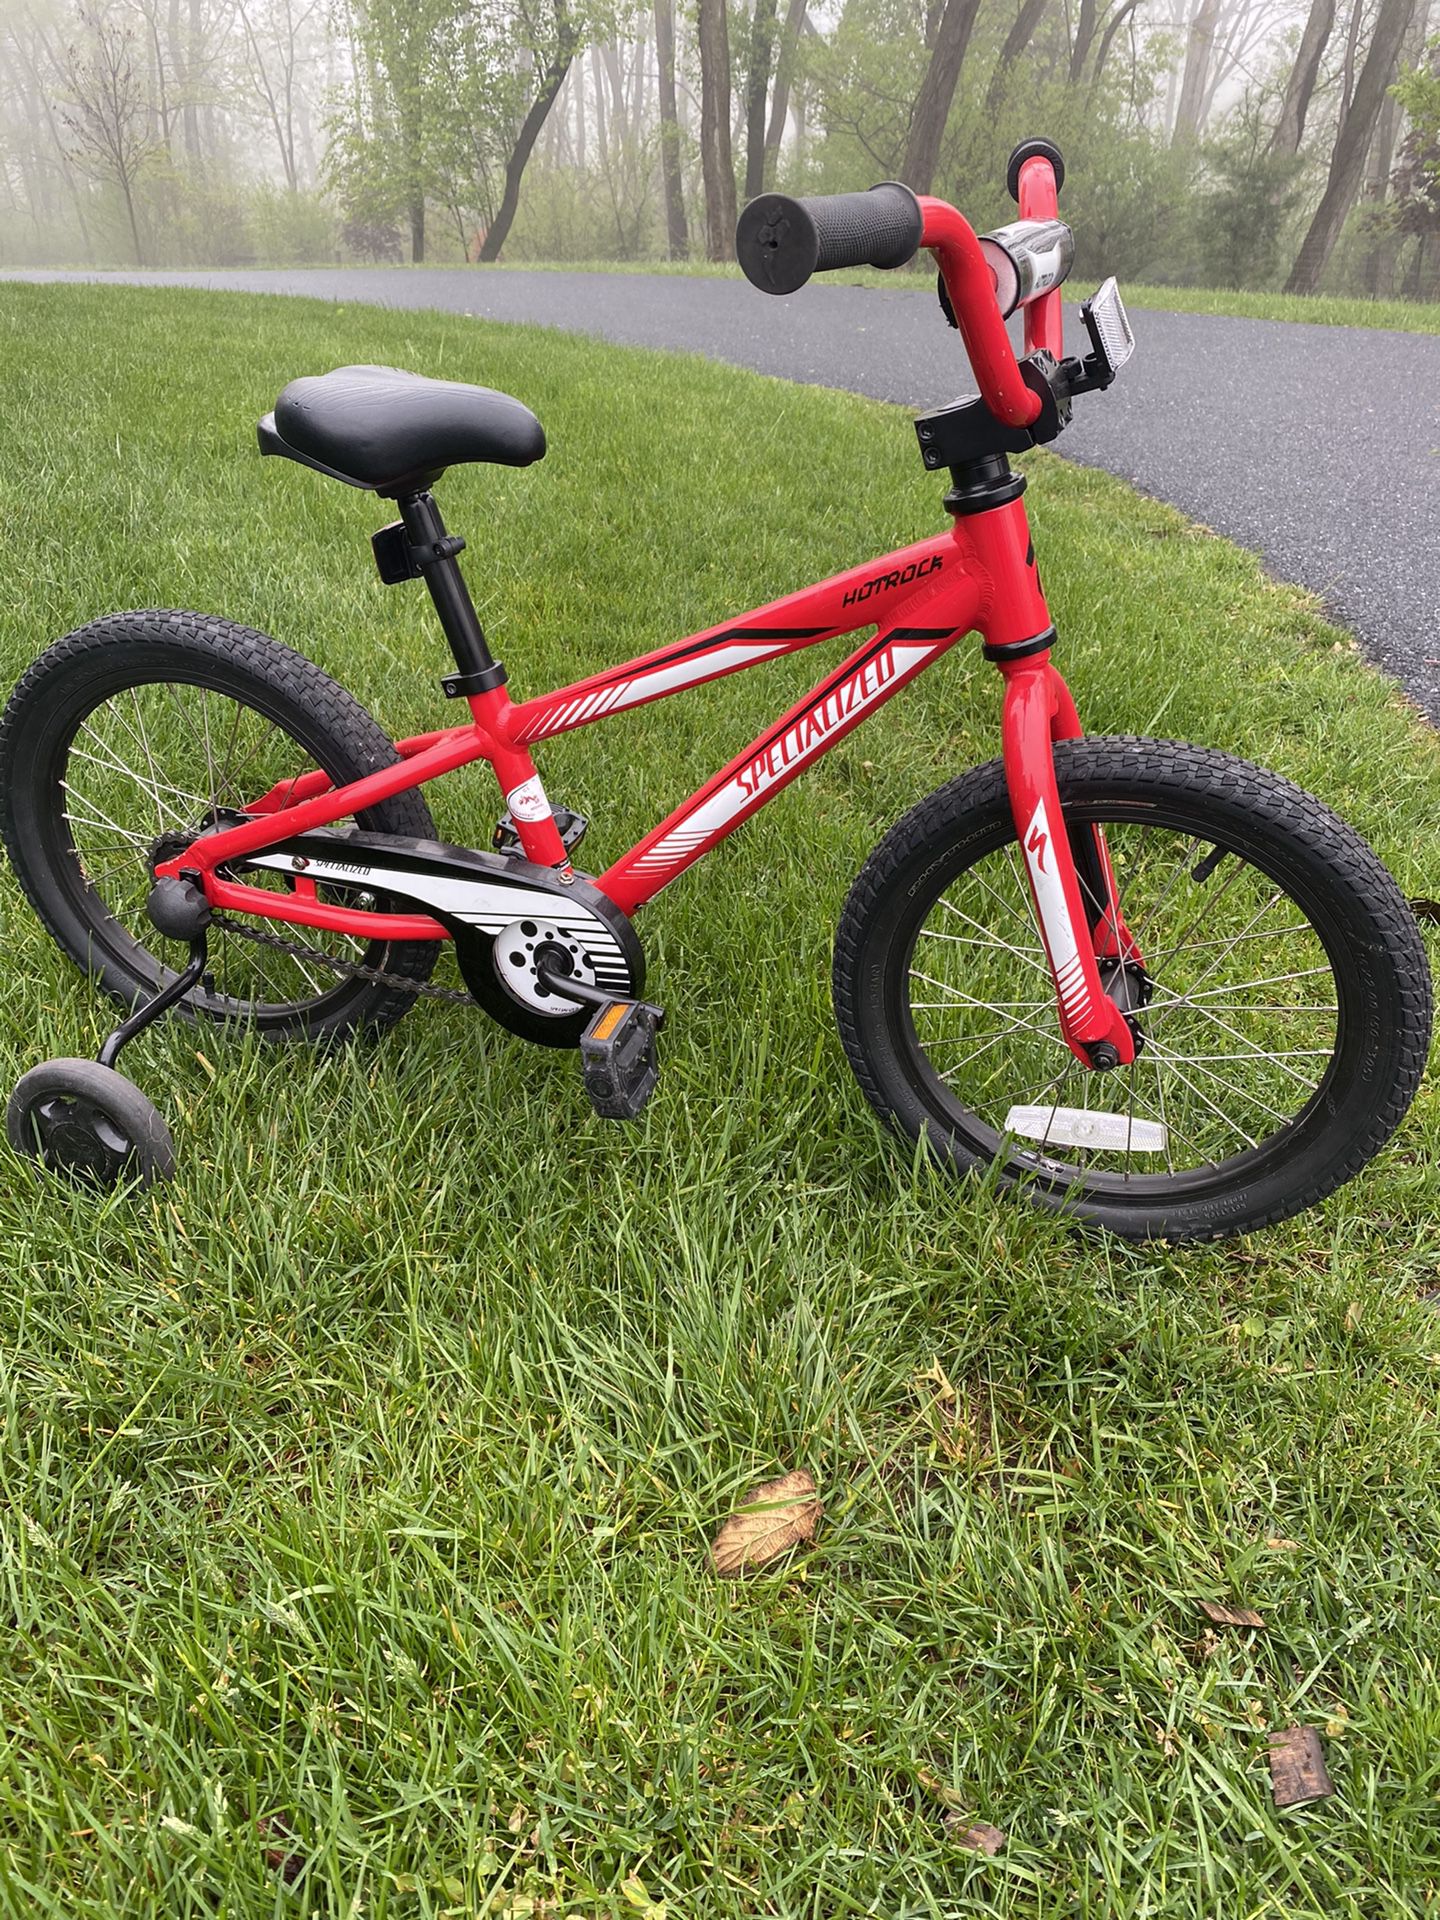 Kids Specialized bike with Training  Wheels